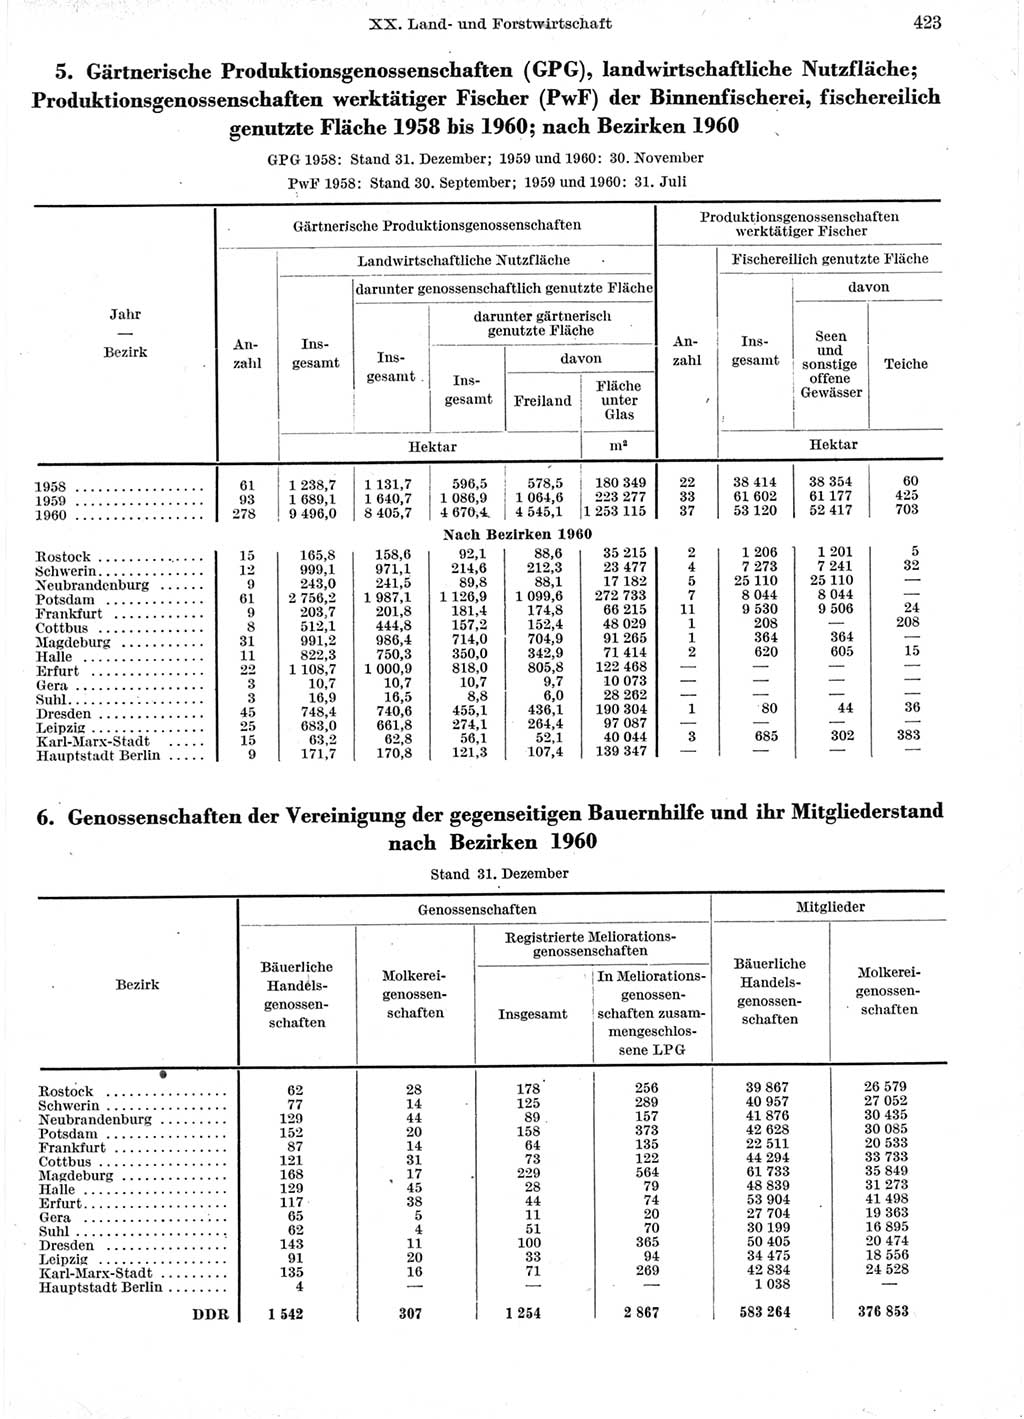 Statistisches Jahrbuch der Deutschen Demokratischen Republik (DDR) 1960-1961, Seite 423 (Stat. Jb. DDR 1960-1961, S. 423)